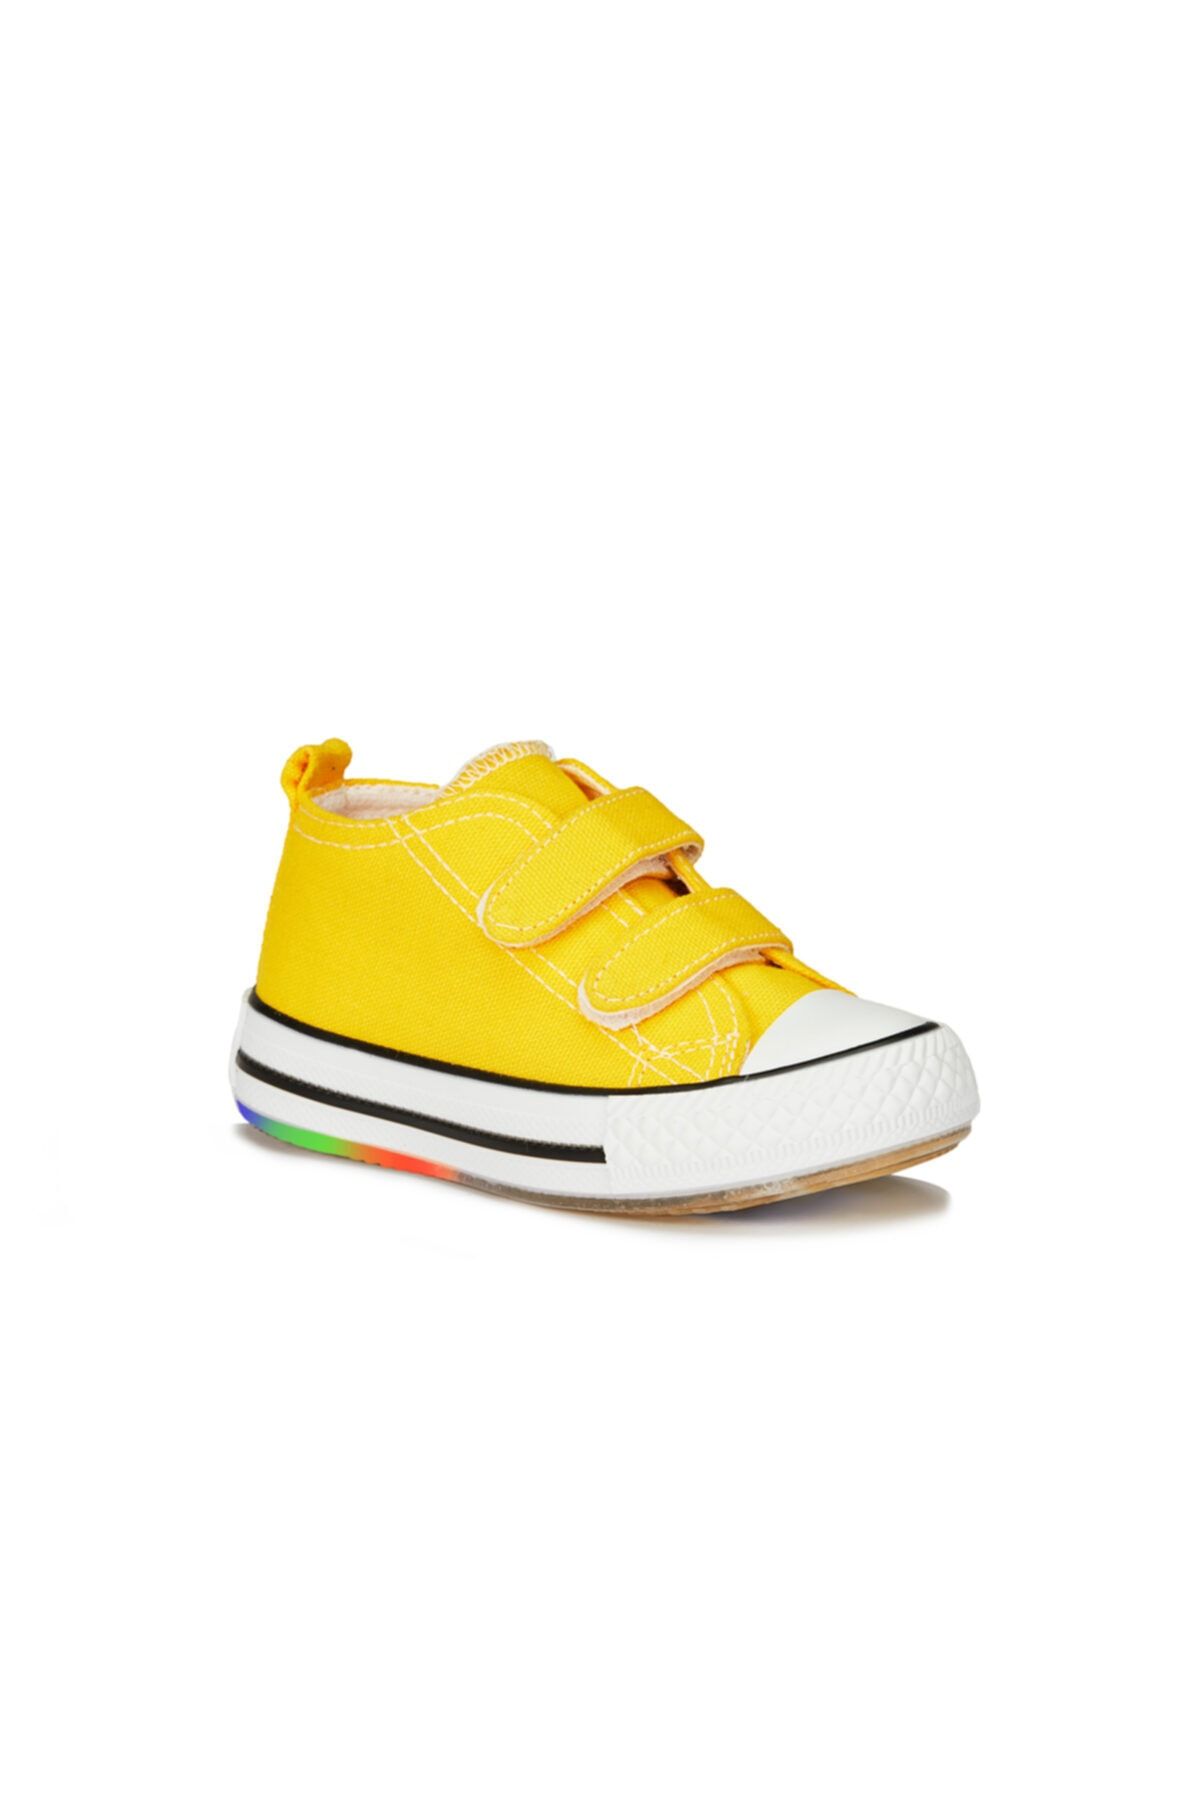 Vicco Pino Işıklı Unisex Bebe Sarı Spor Ayakkabı